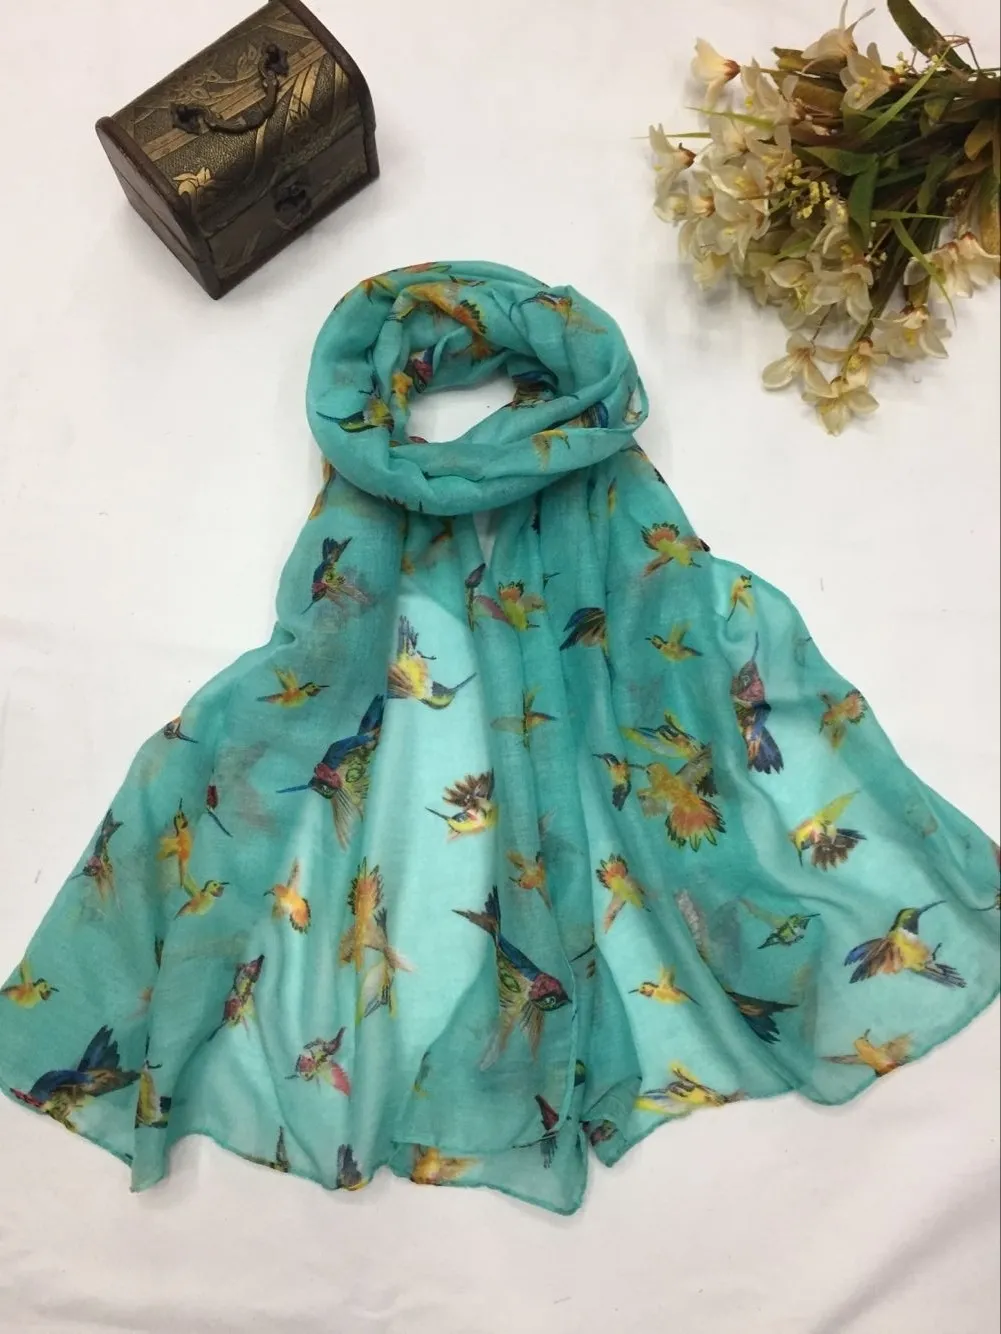 Nova moda bonito zumbido pássaro impressão cachecol feminino padrão animal envoltório xales cachecóis hijab 3 cores inteiras lot2202656